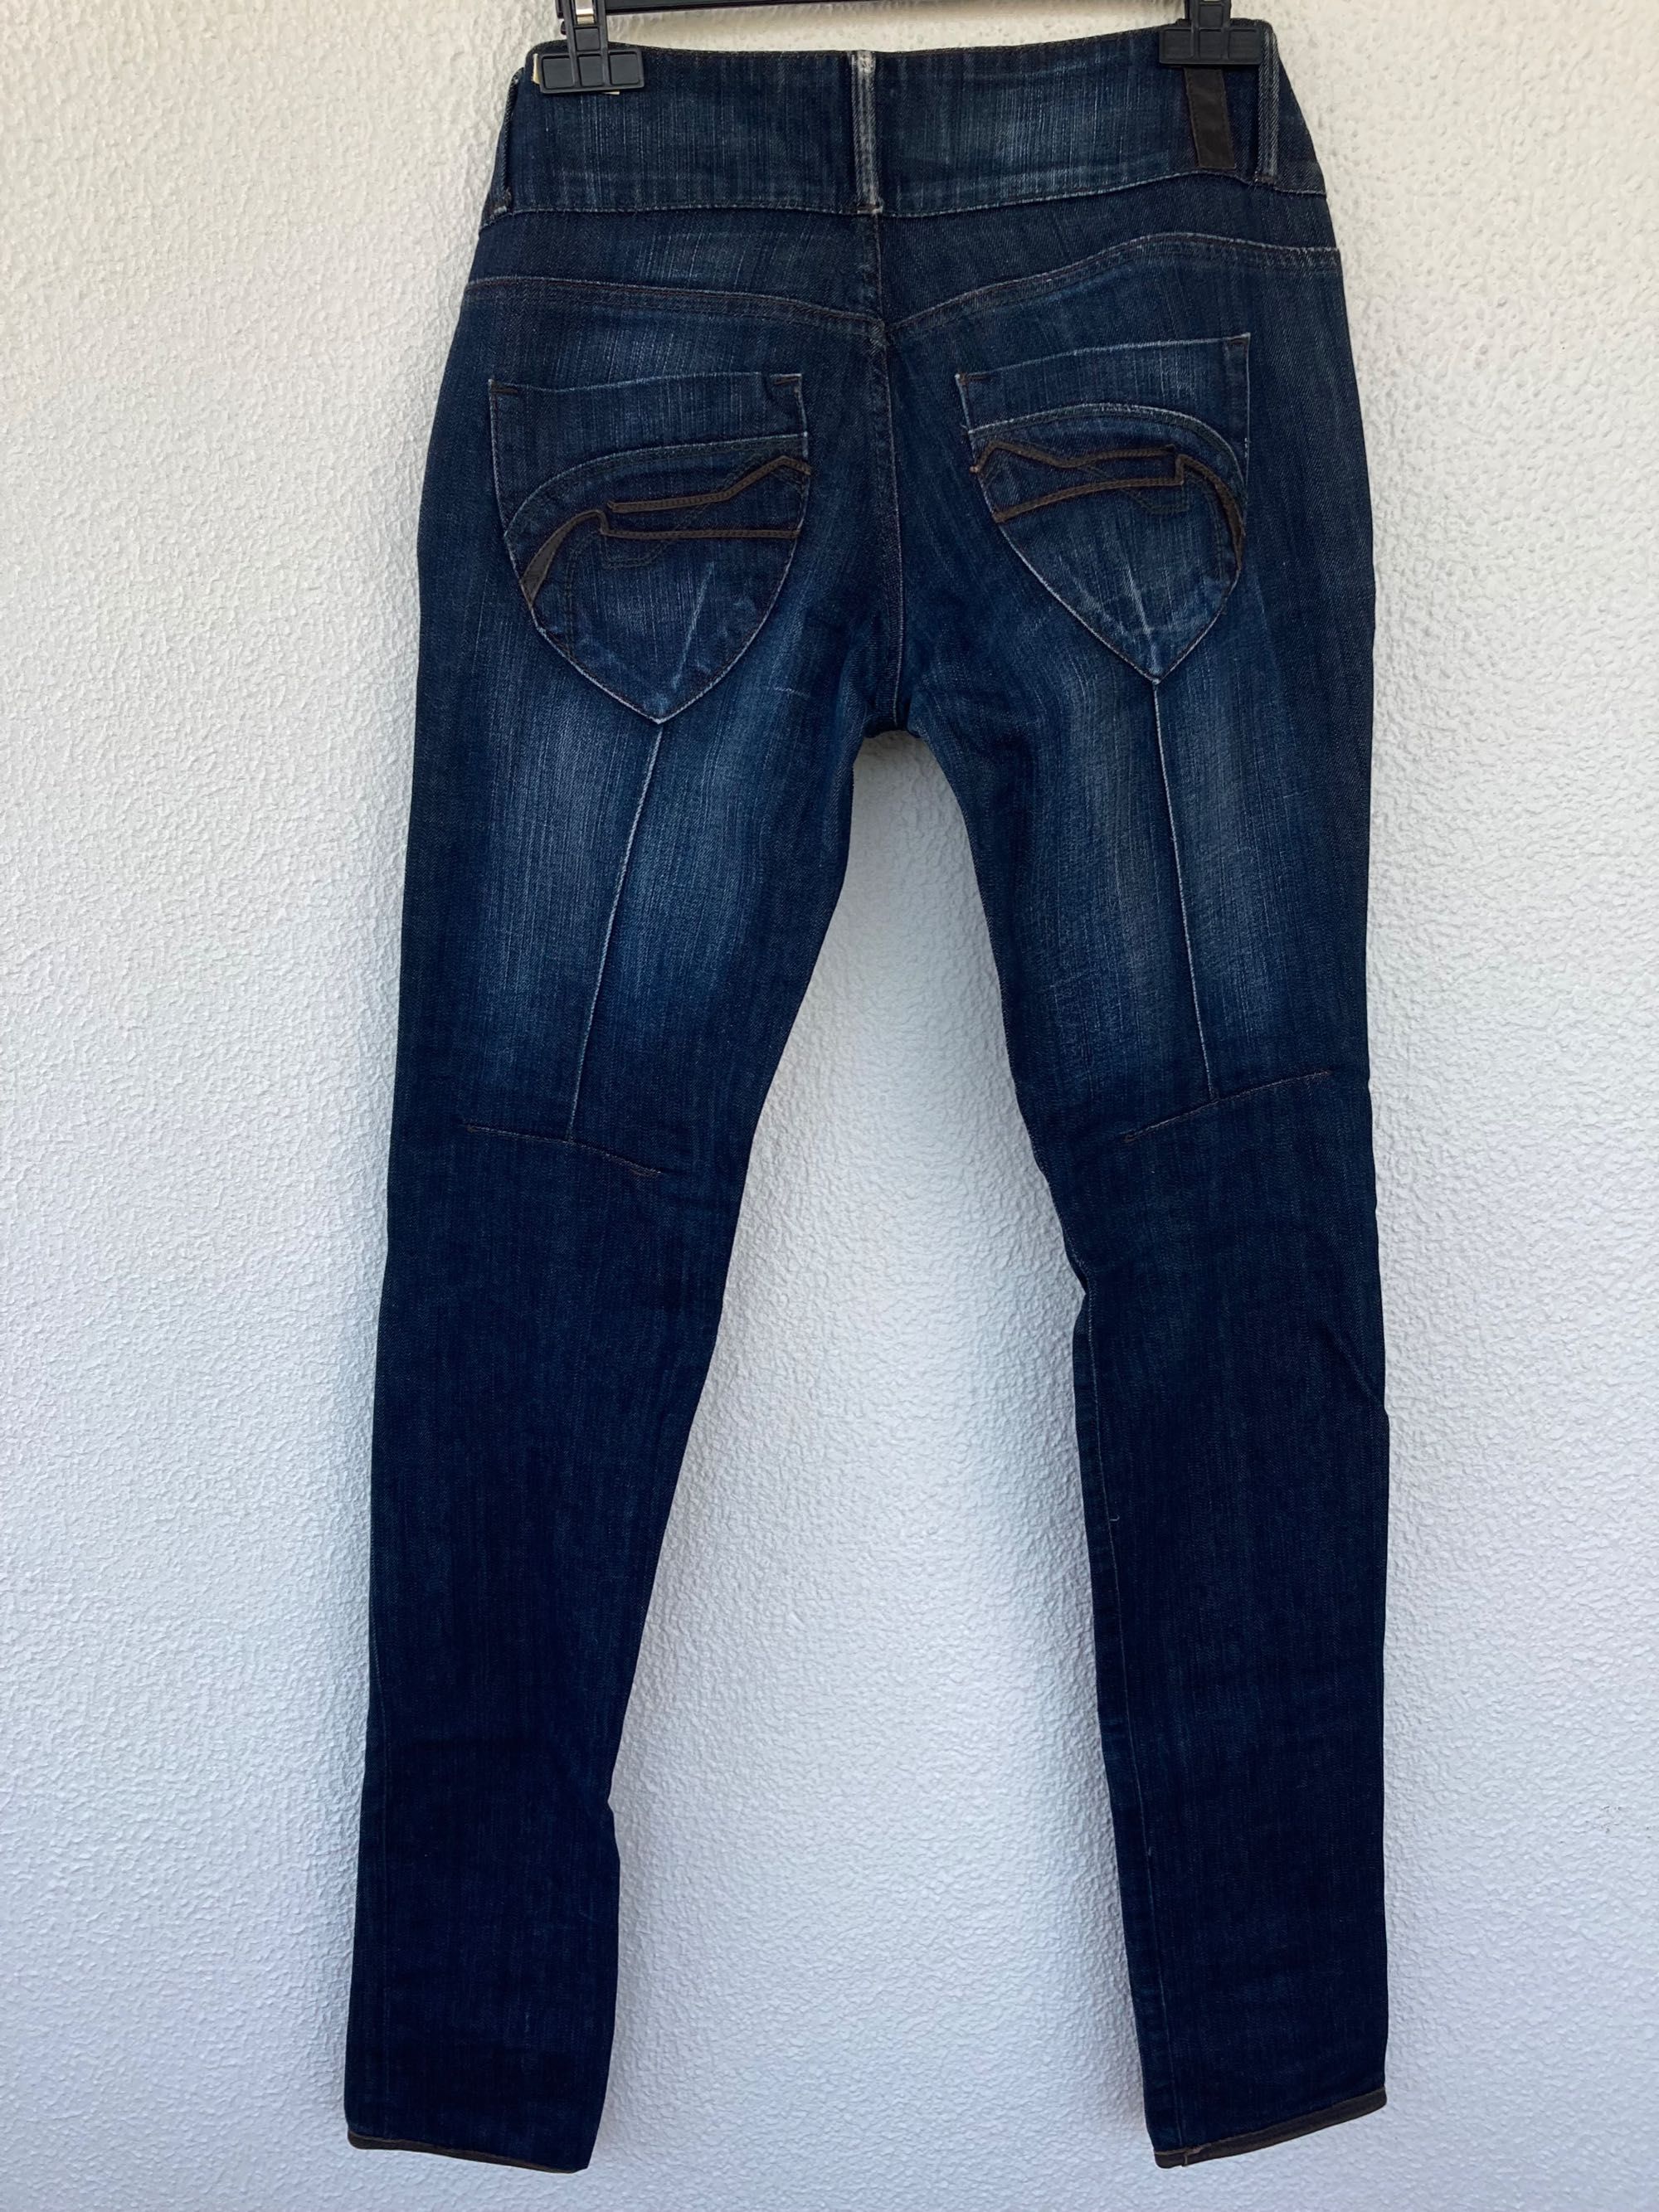 Bershka jeans 40